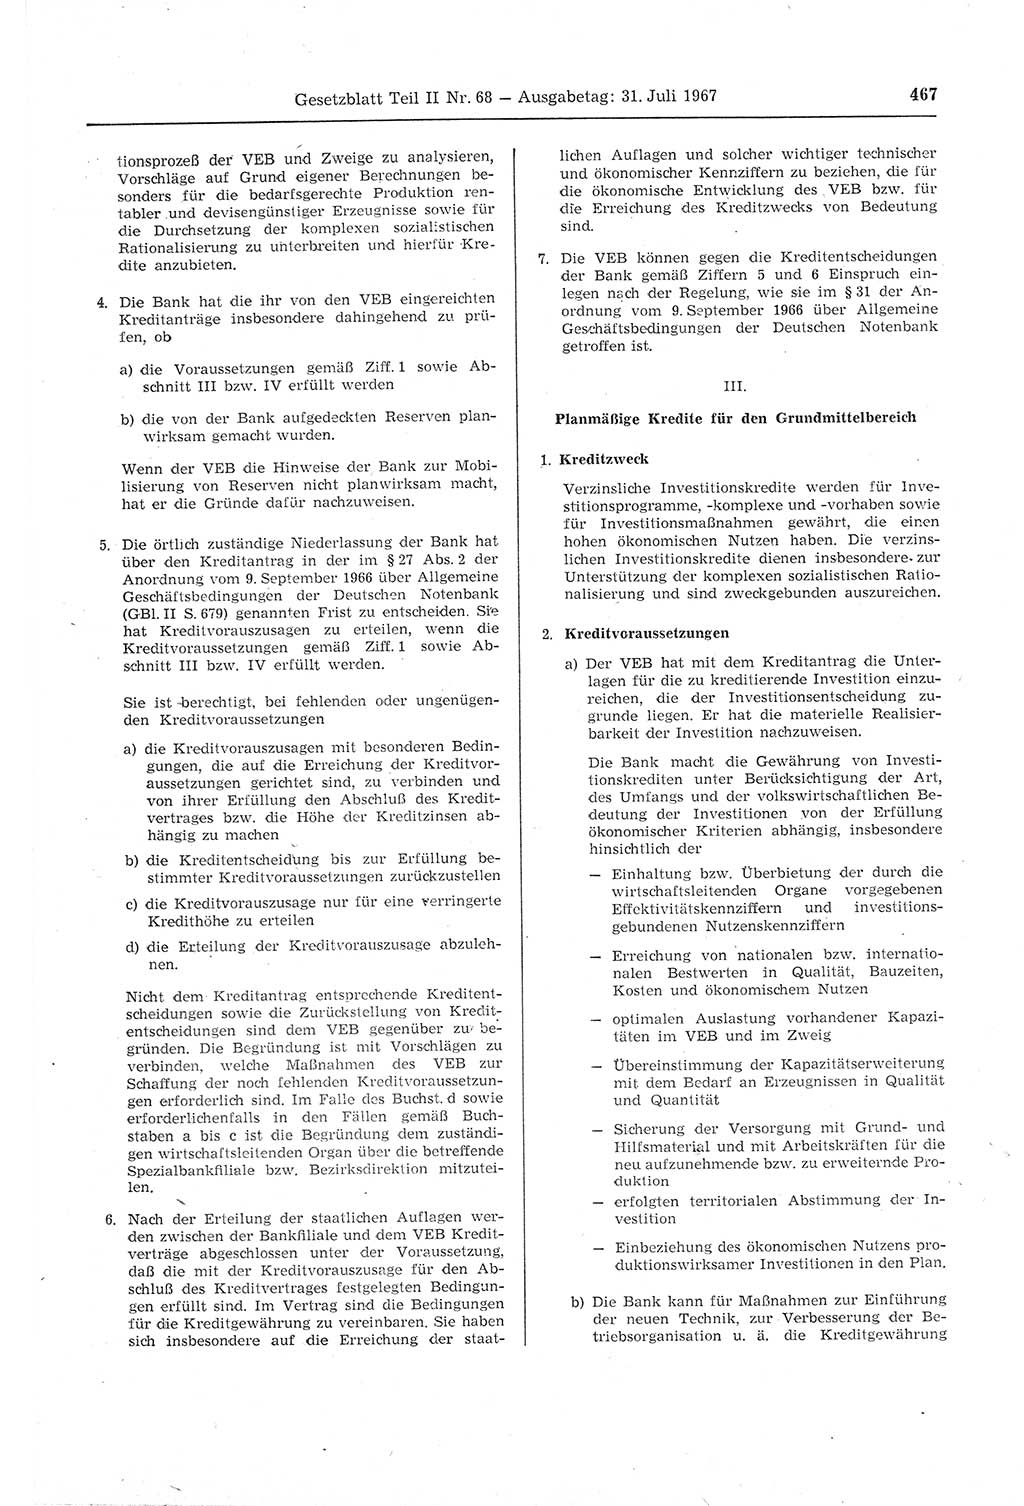 Gesetzblatt (GBl.) der Deutschen Demokratischen Republik (DDR) Teil ⅠⅠ 1967, Seite 467 (GBl. DDR ⅠⅠ 1967, S. 467)